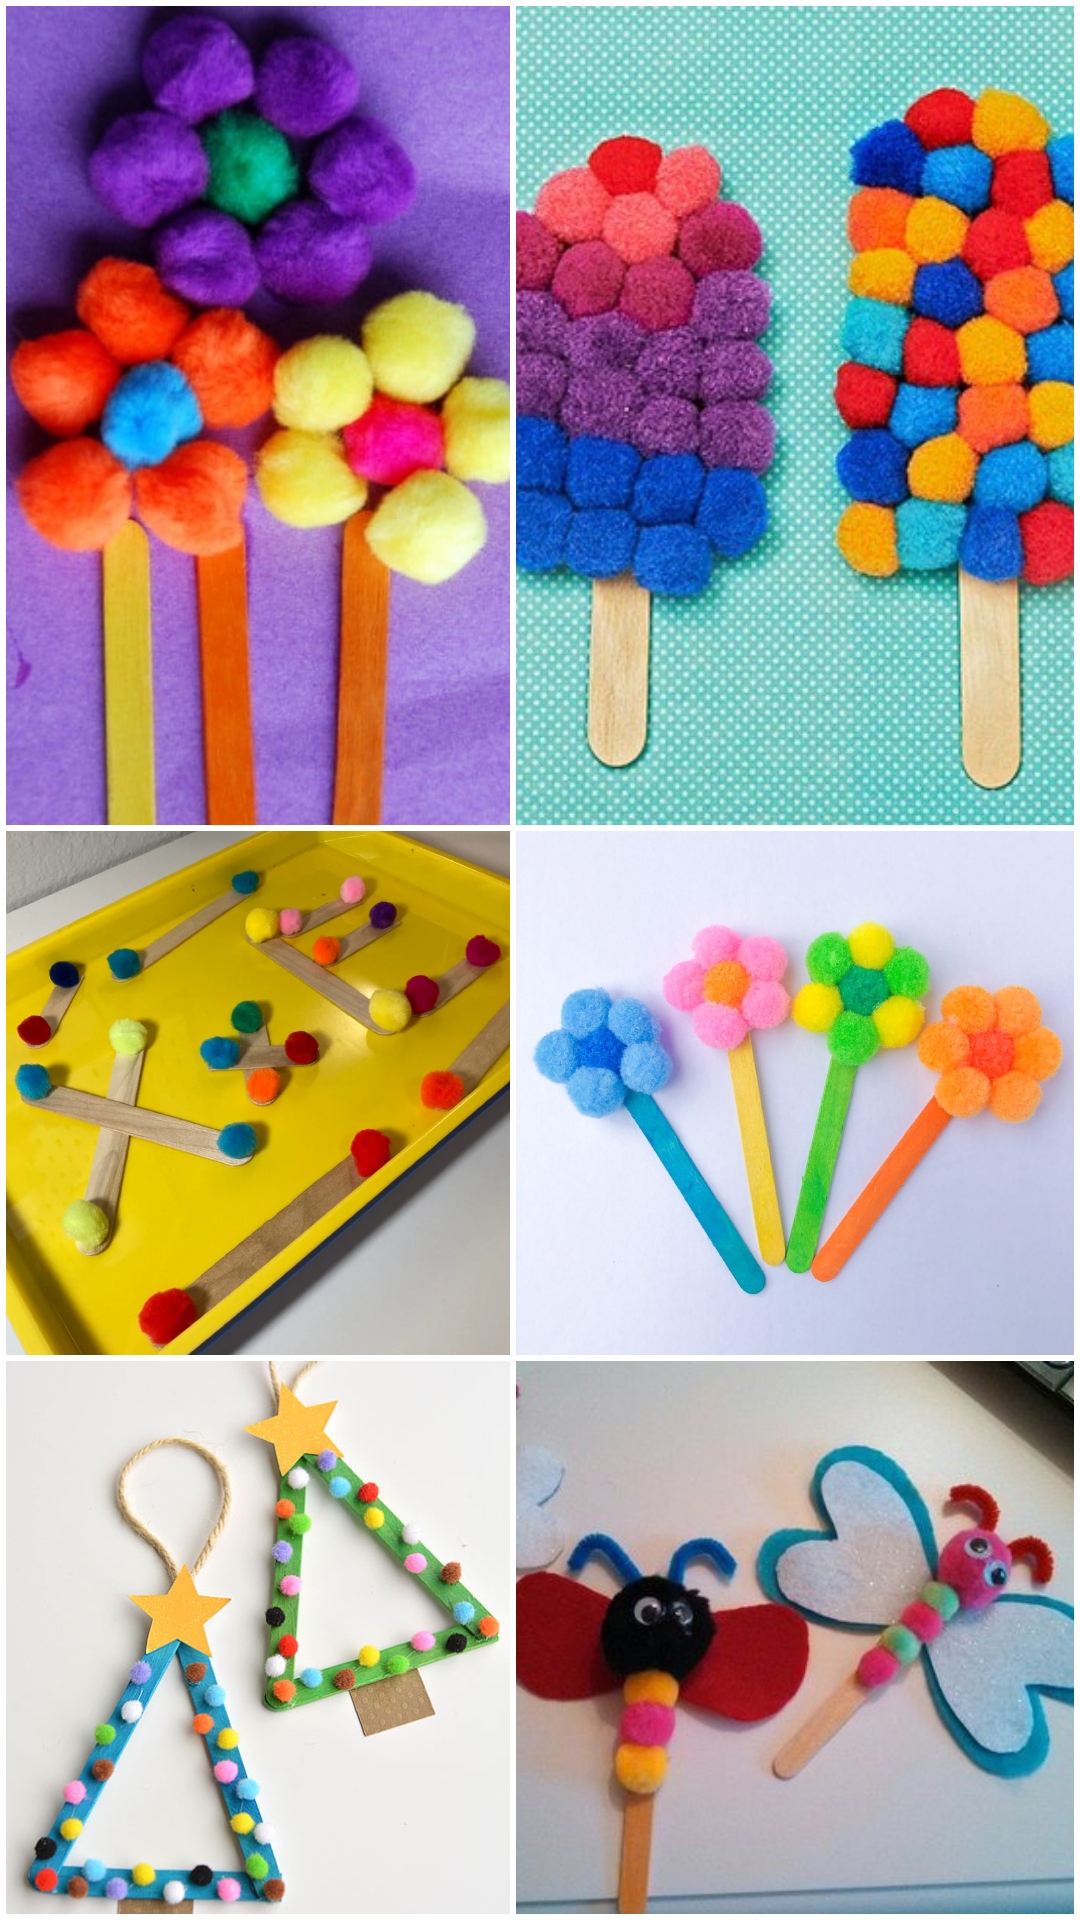 34 Pom Pom Crafts Ideas - DIY Projects to Make With Pom Poms